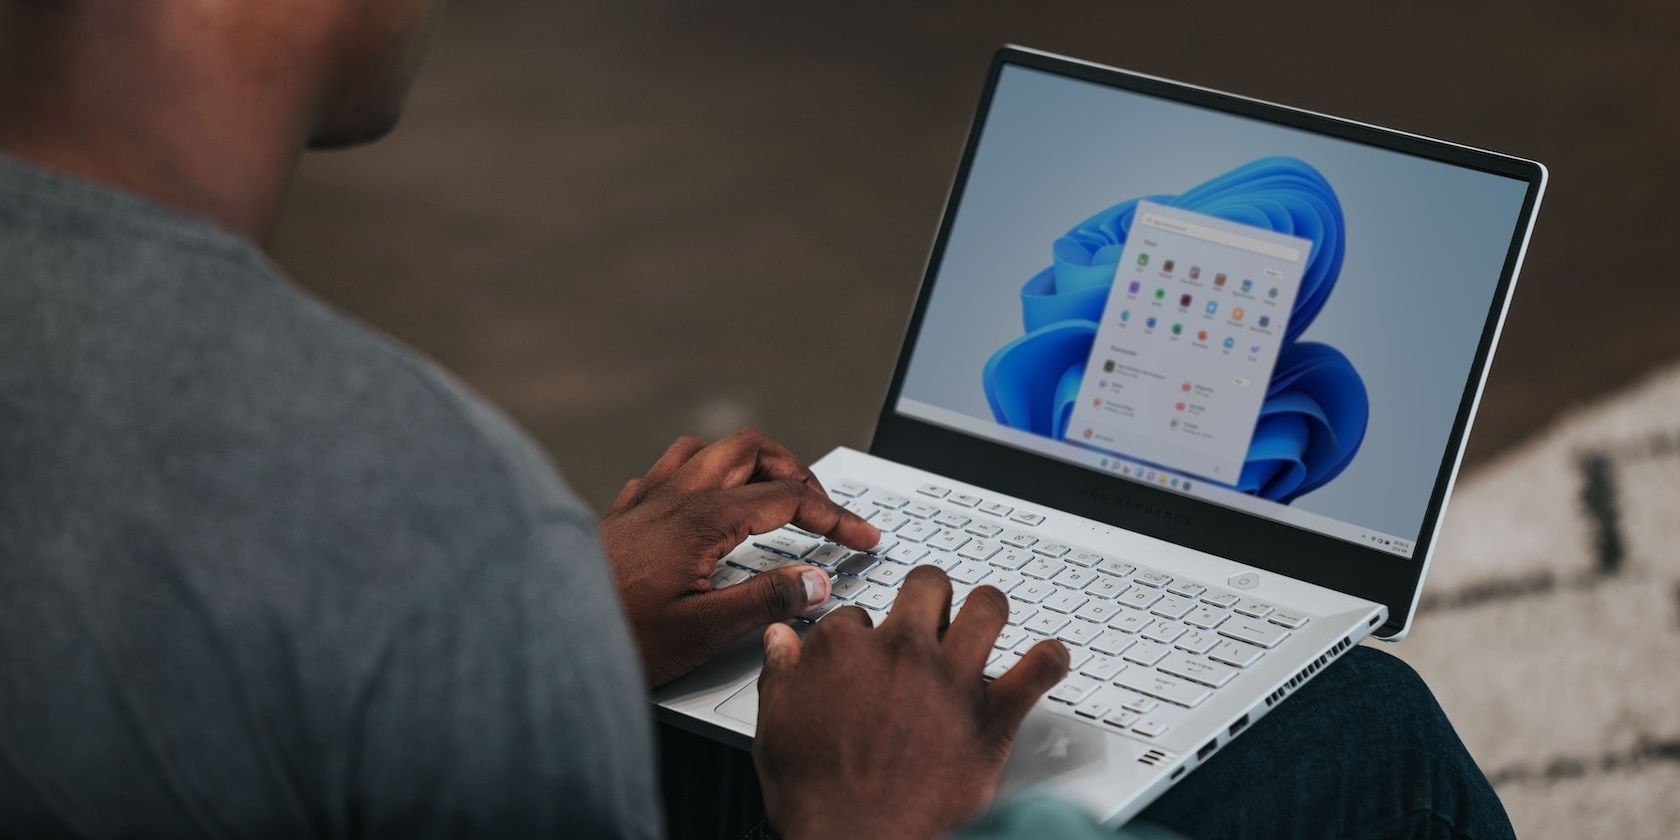 Man in gray shirt using Windows 11 laptop